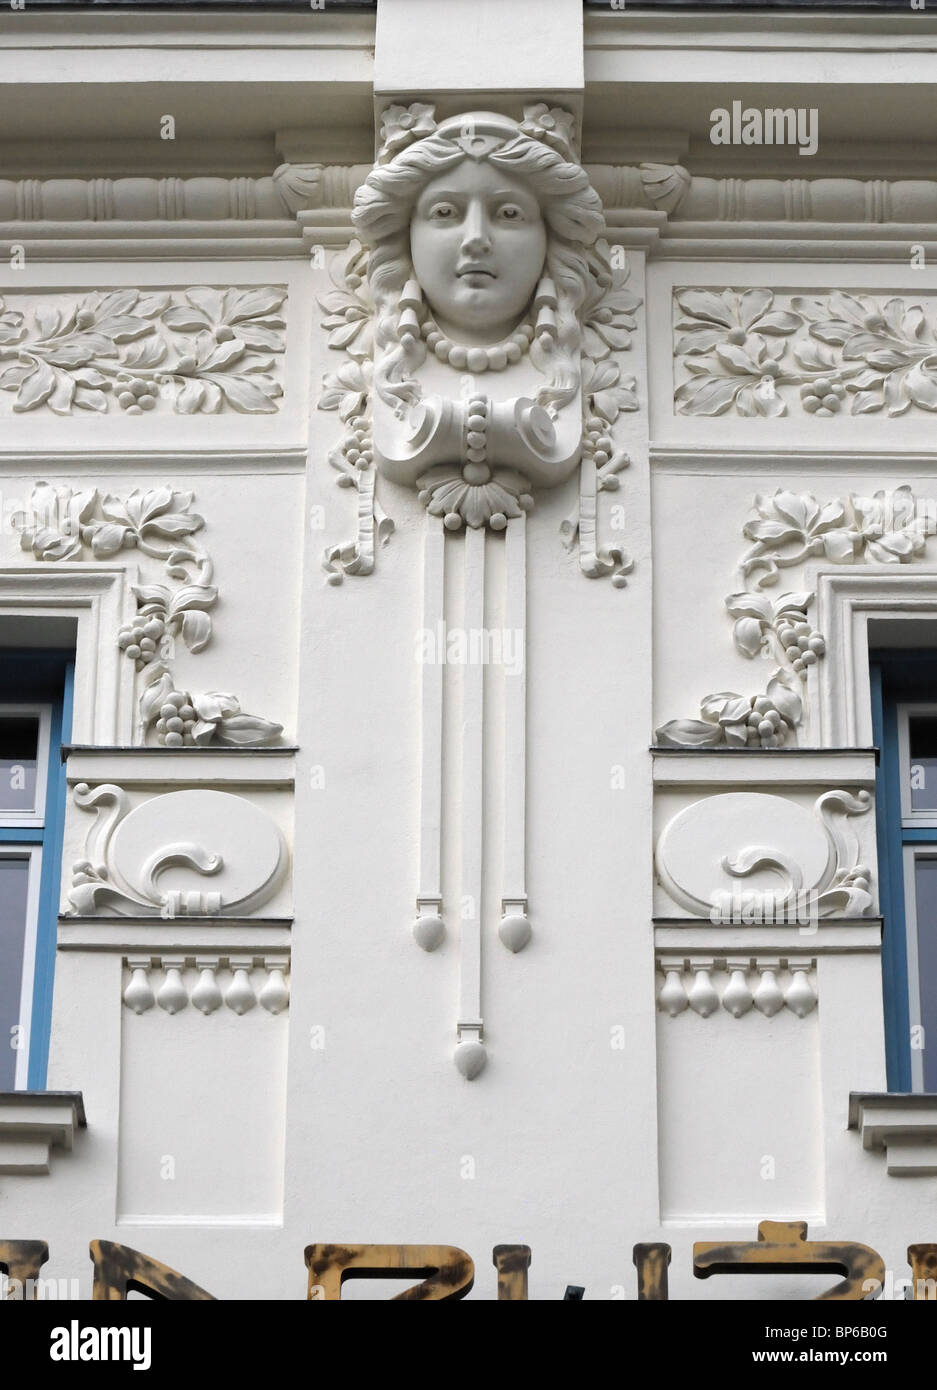 Ljubljana, Slowenien. Zadruzna Zveza Gebäude (kooperative Vereinigung von Slowenien - arch: Emil Medvescek) Jugendstil Detail Stockfoto